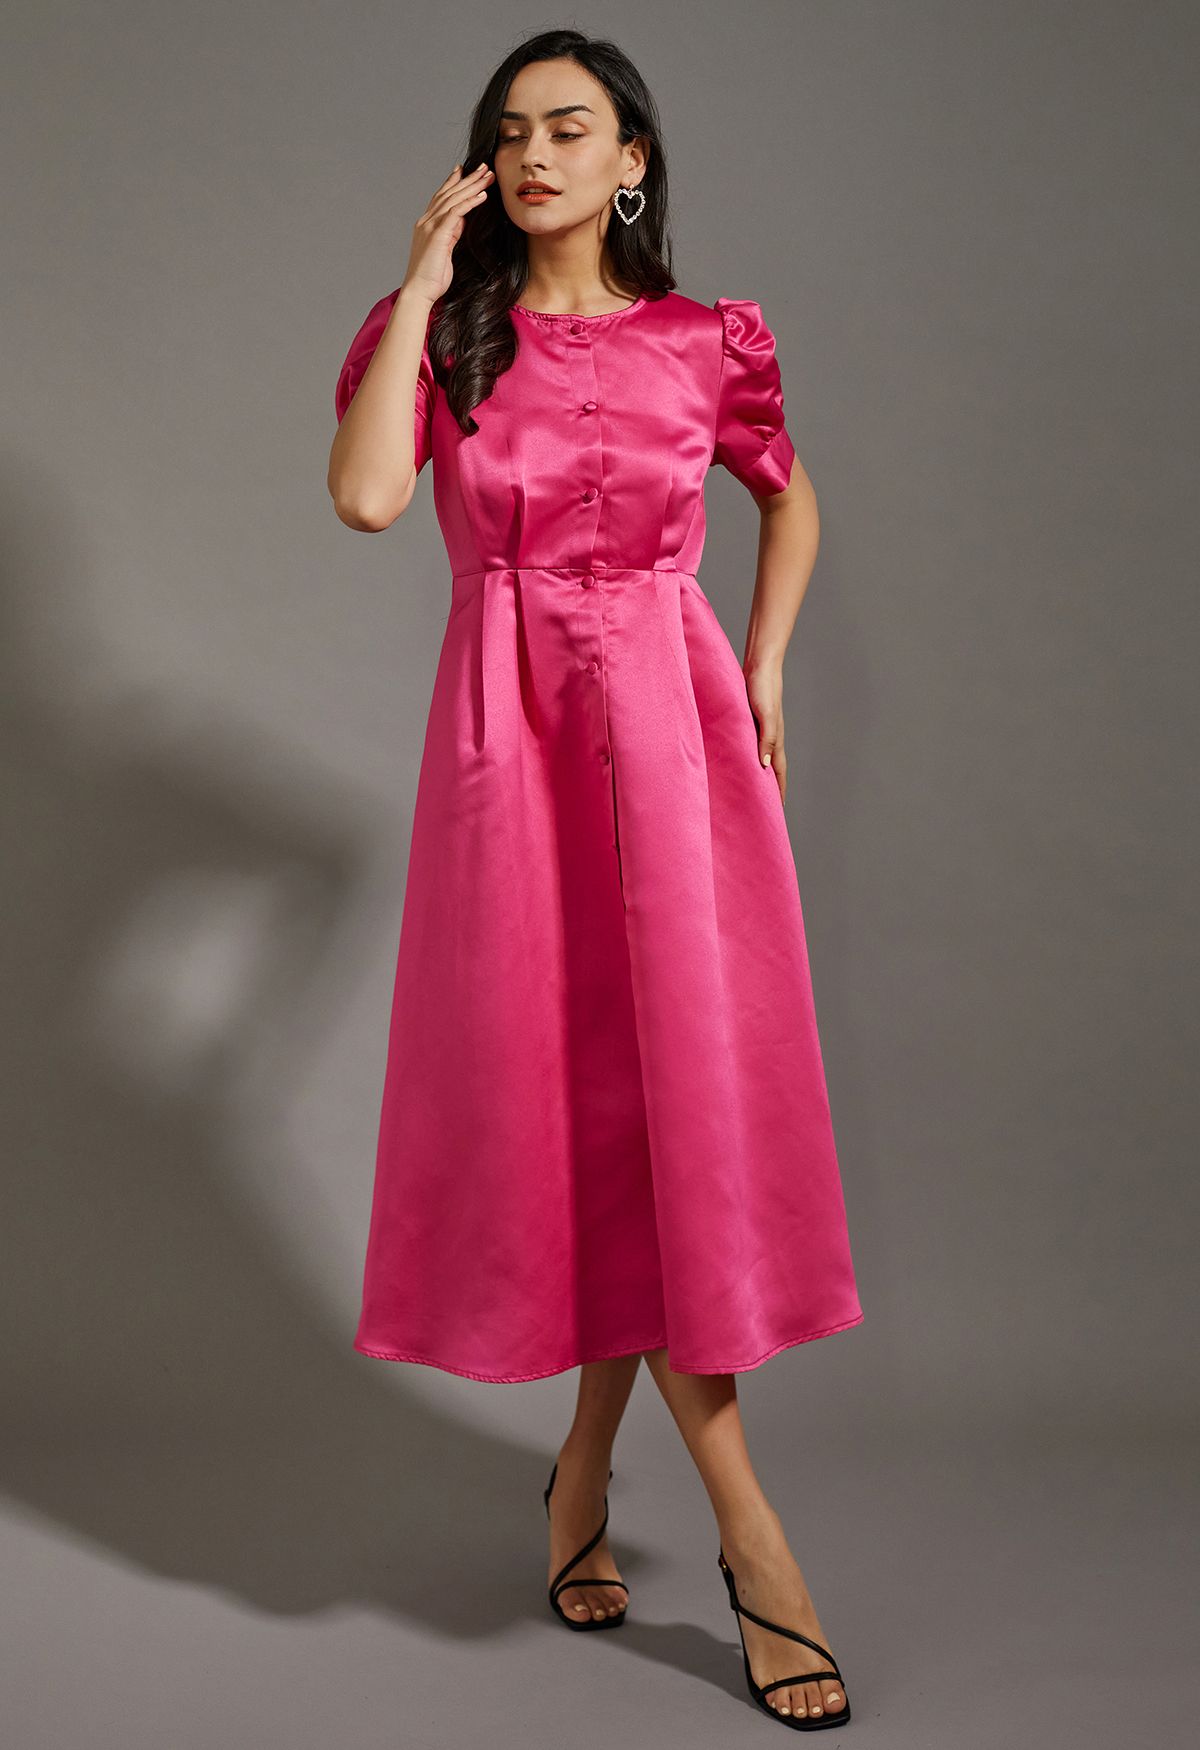 Robe mi-longue boutonnée en satin brillant rose vif